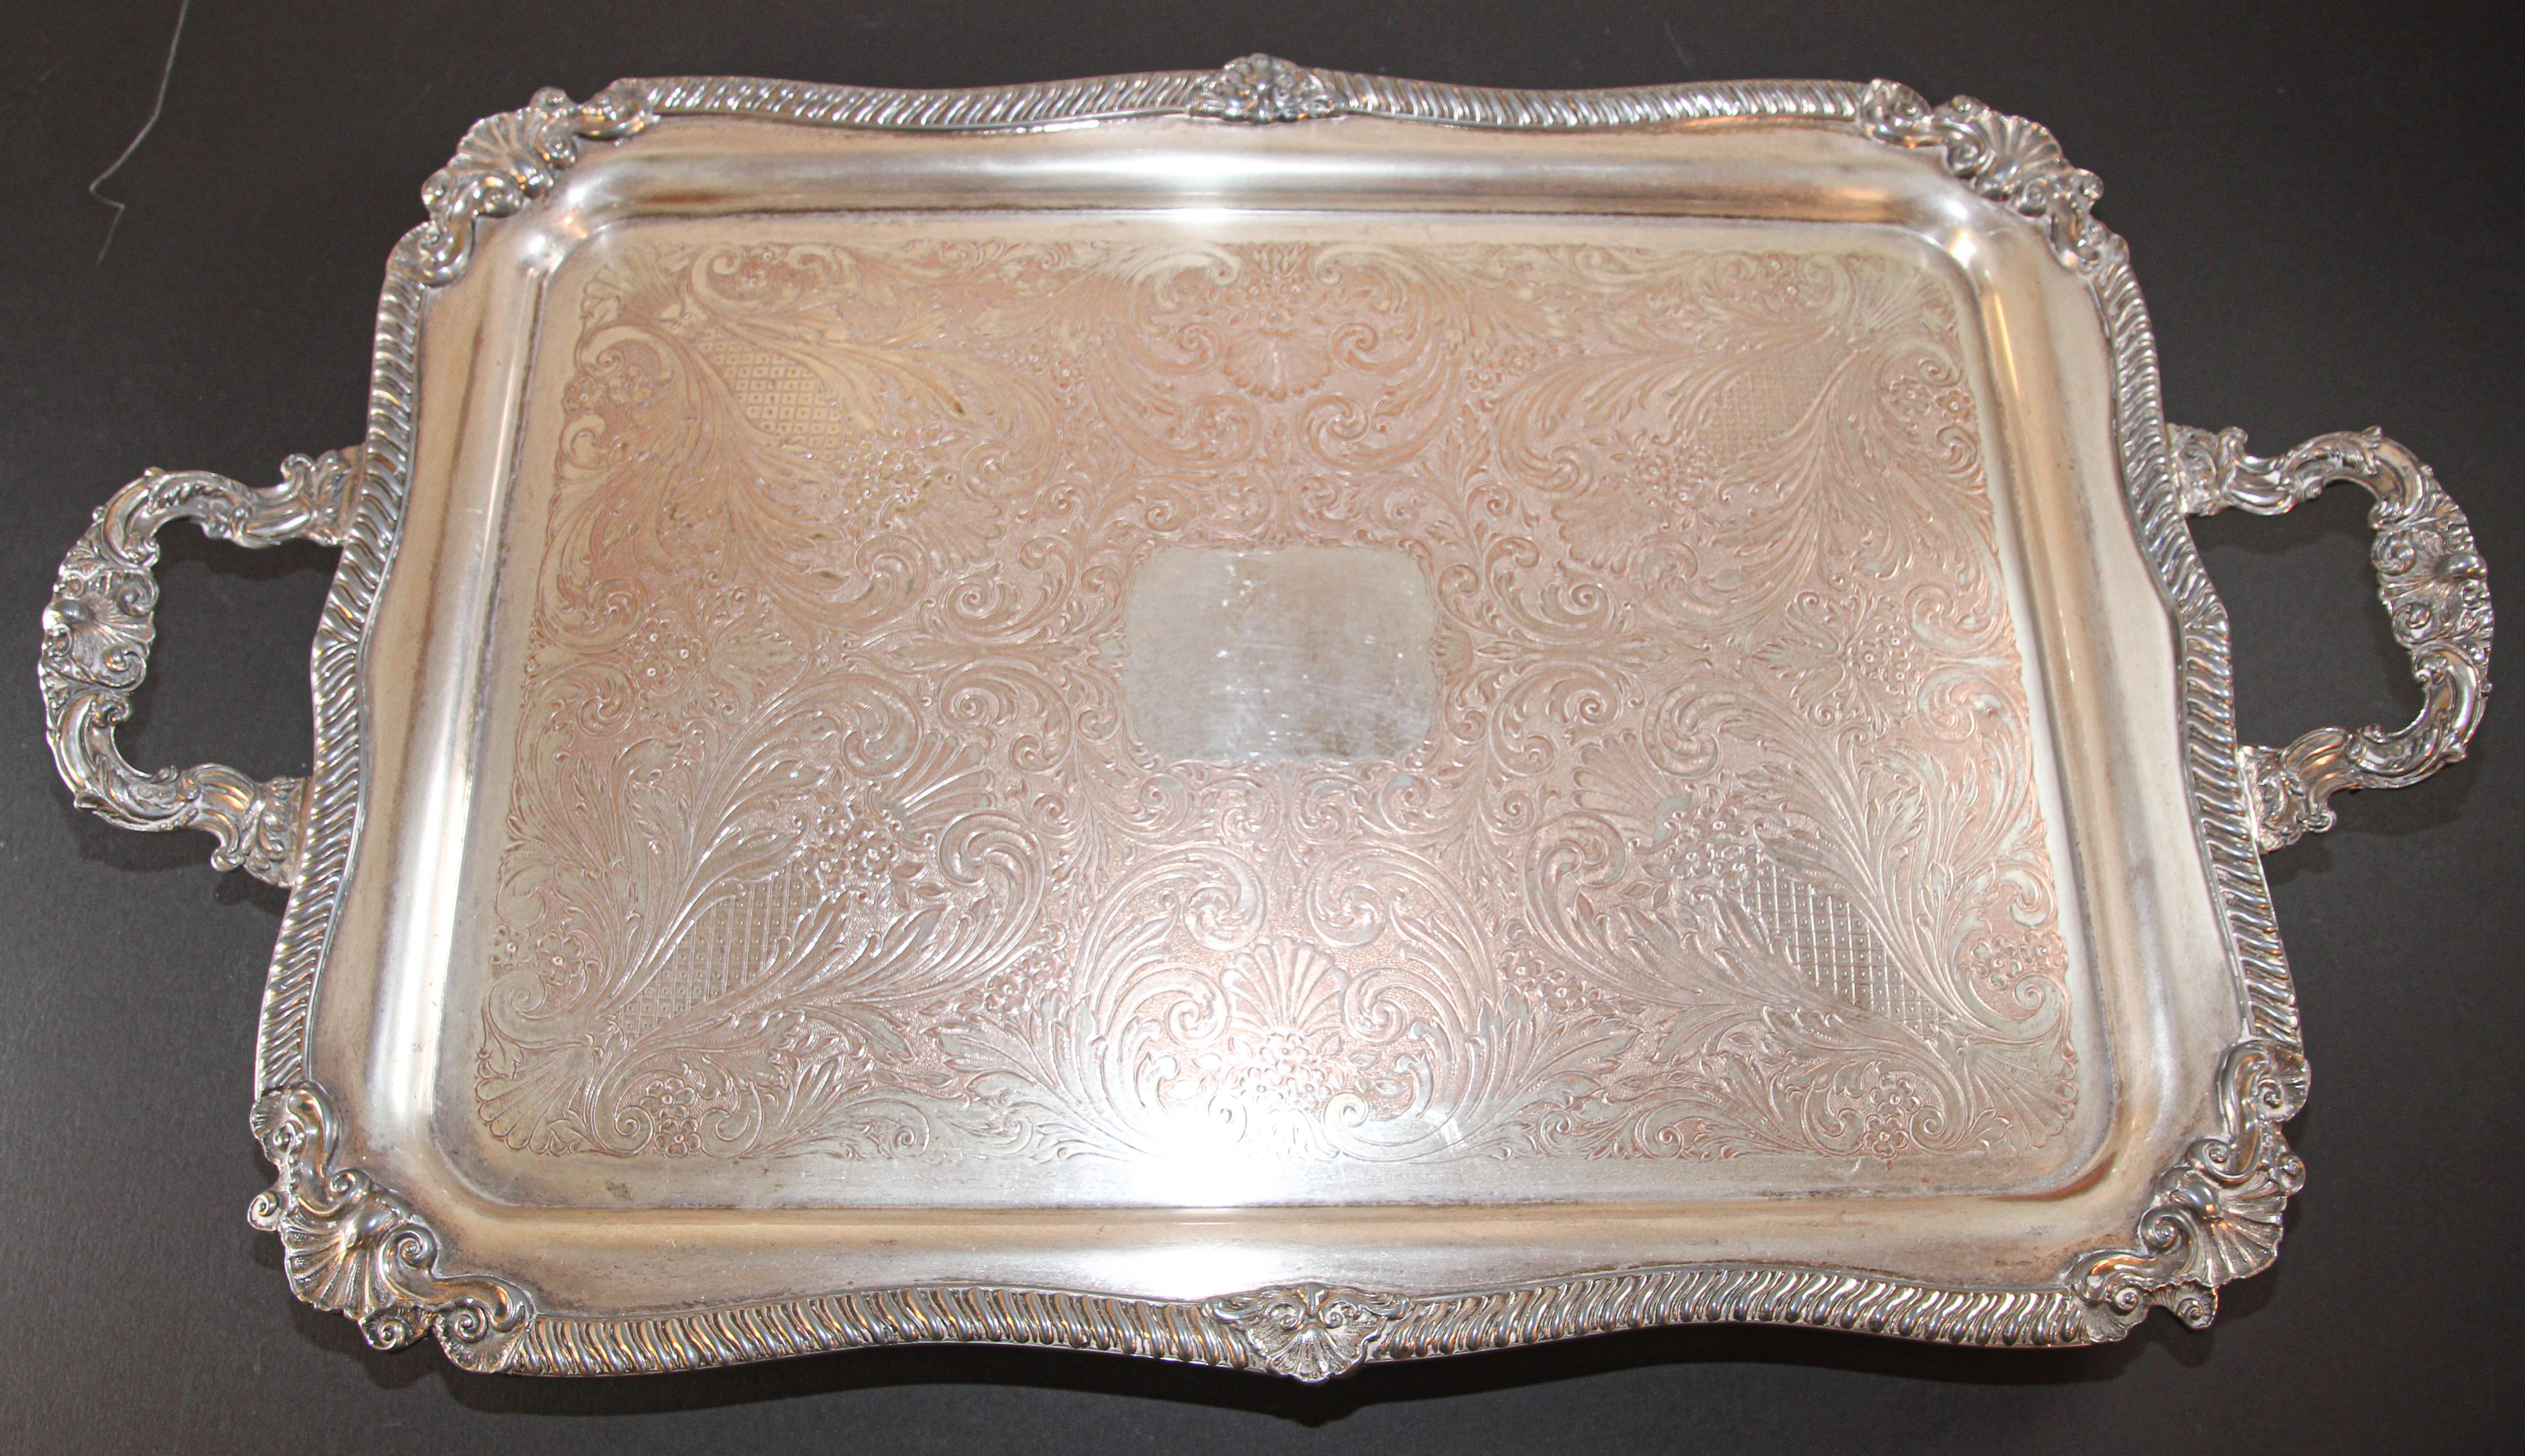 Vintage große Silberplatte Tablett George IV englischen Stil
Ein prächtiges, feines und beeindruckendes Teetablett aus vergoldetem Silber im englischen George IV-Stil.
Dieses prächtige versilberte Teetablett im antiken Stil von George IV. hat eine